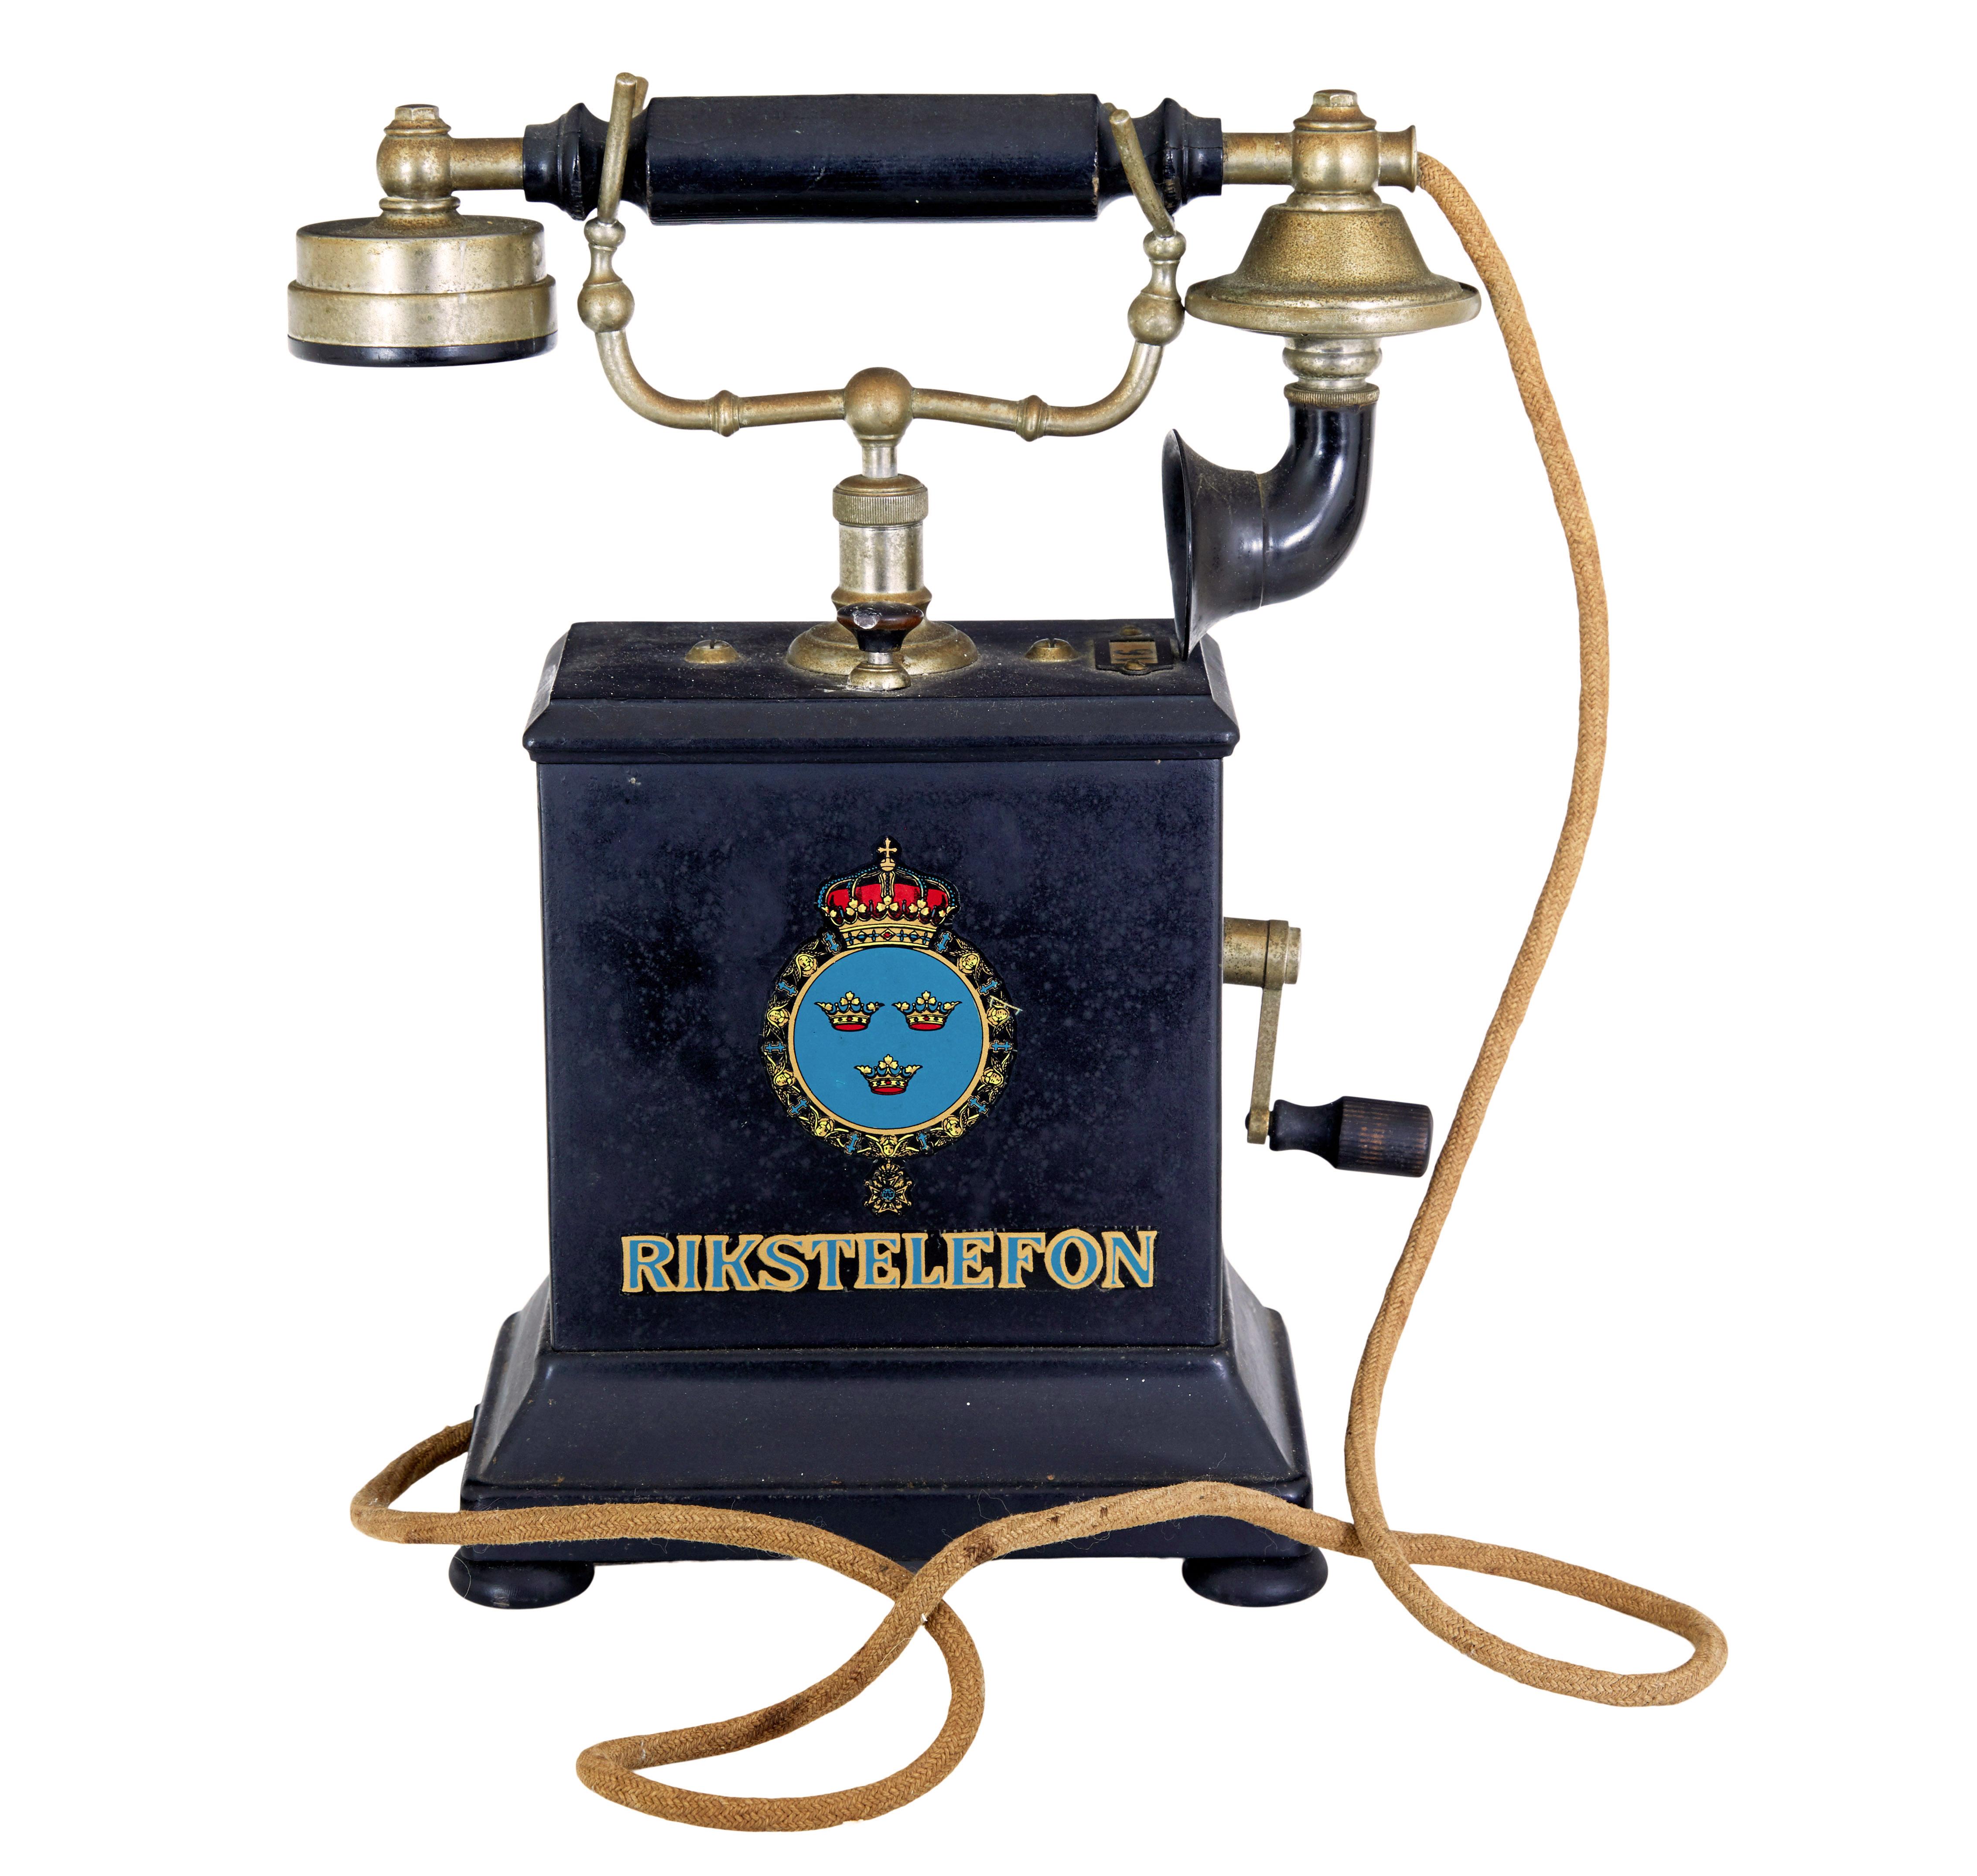 Schwedisches Metalltelefon aus dem frühen 20. Jahrhundert von rikstelefon um 1900.

Möglicherweise früher als datiert, haben wir hier einen Blech-Rikstelefonapparat.  Rikstelefon war vom 19. bis zum Ende des 20. Jahrhunderts der nationale